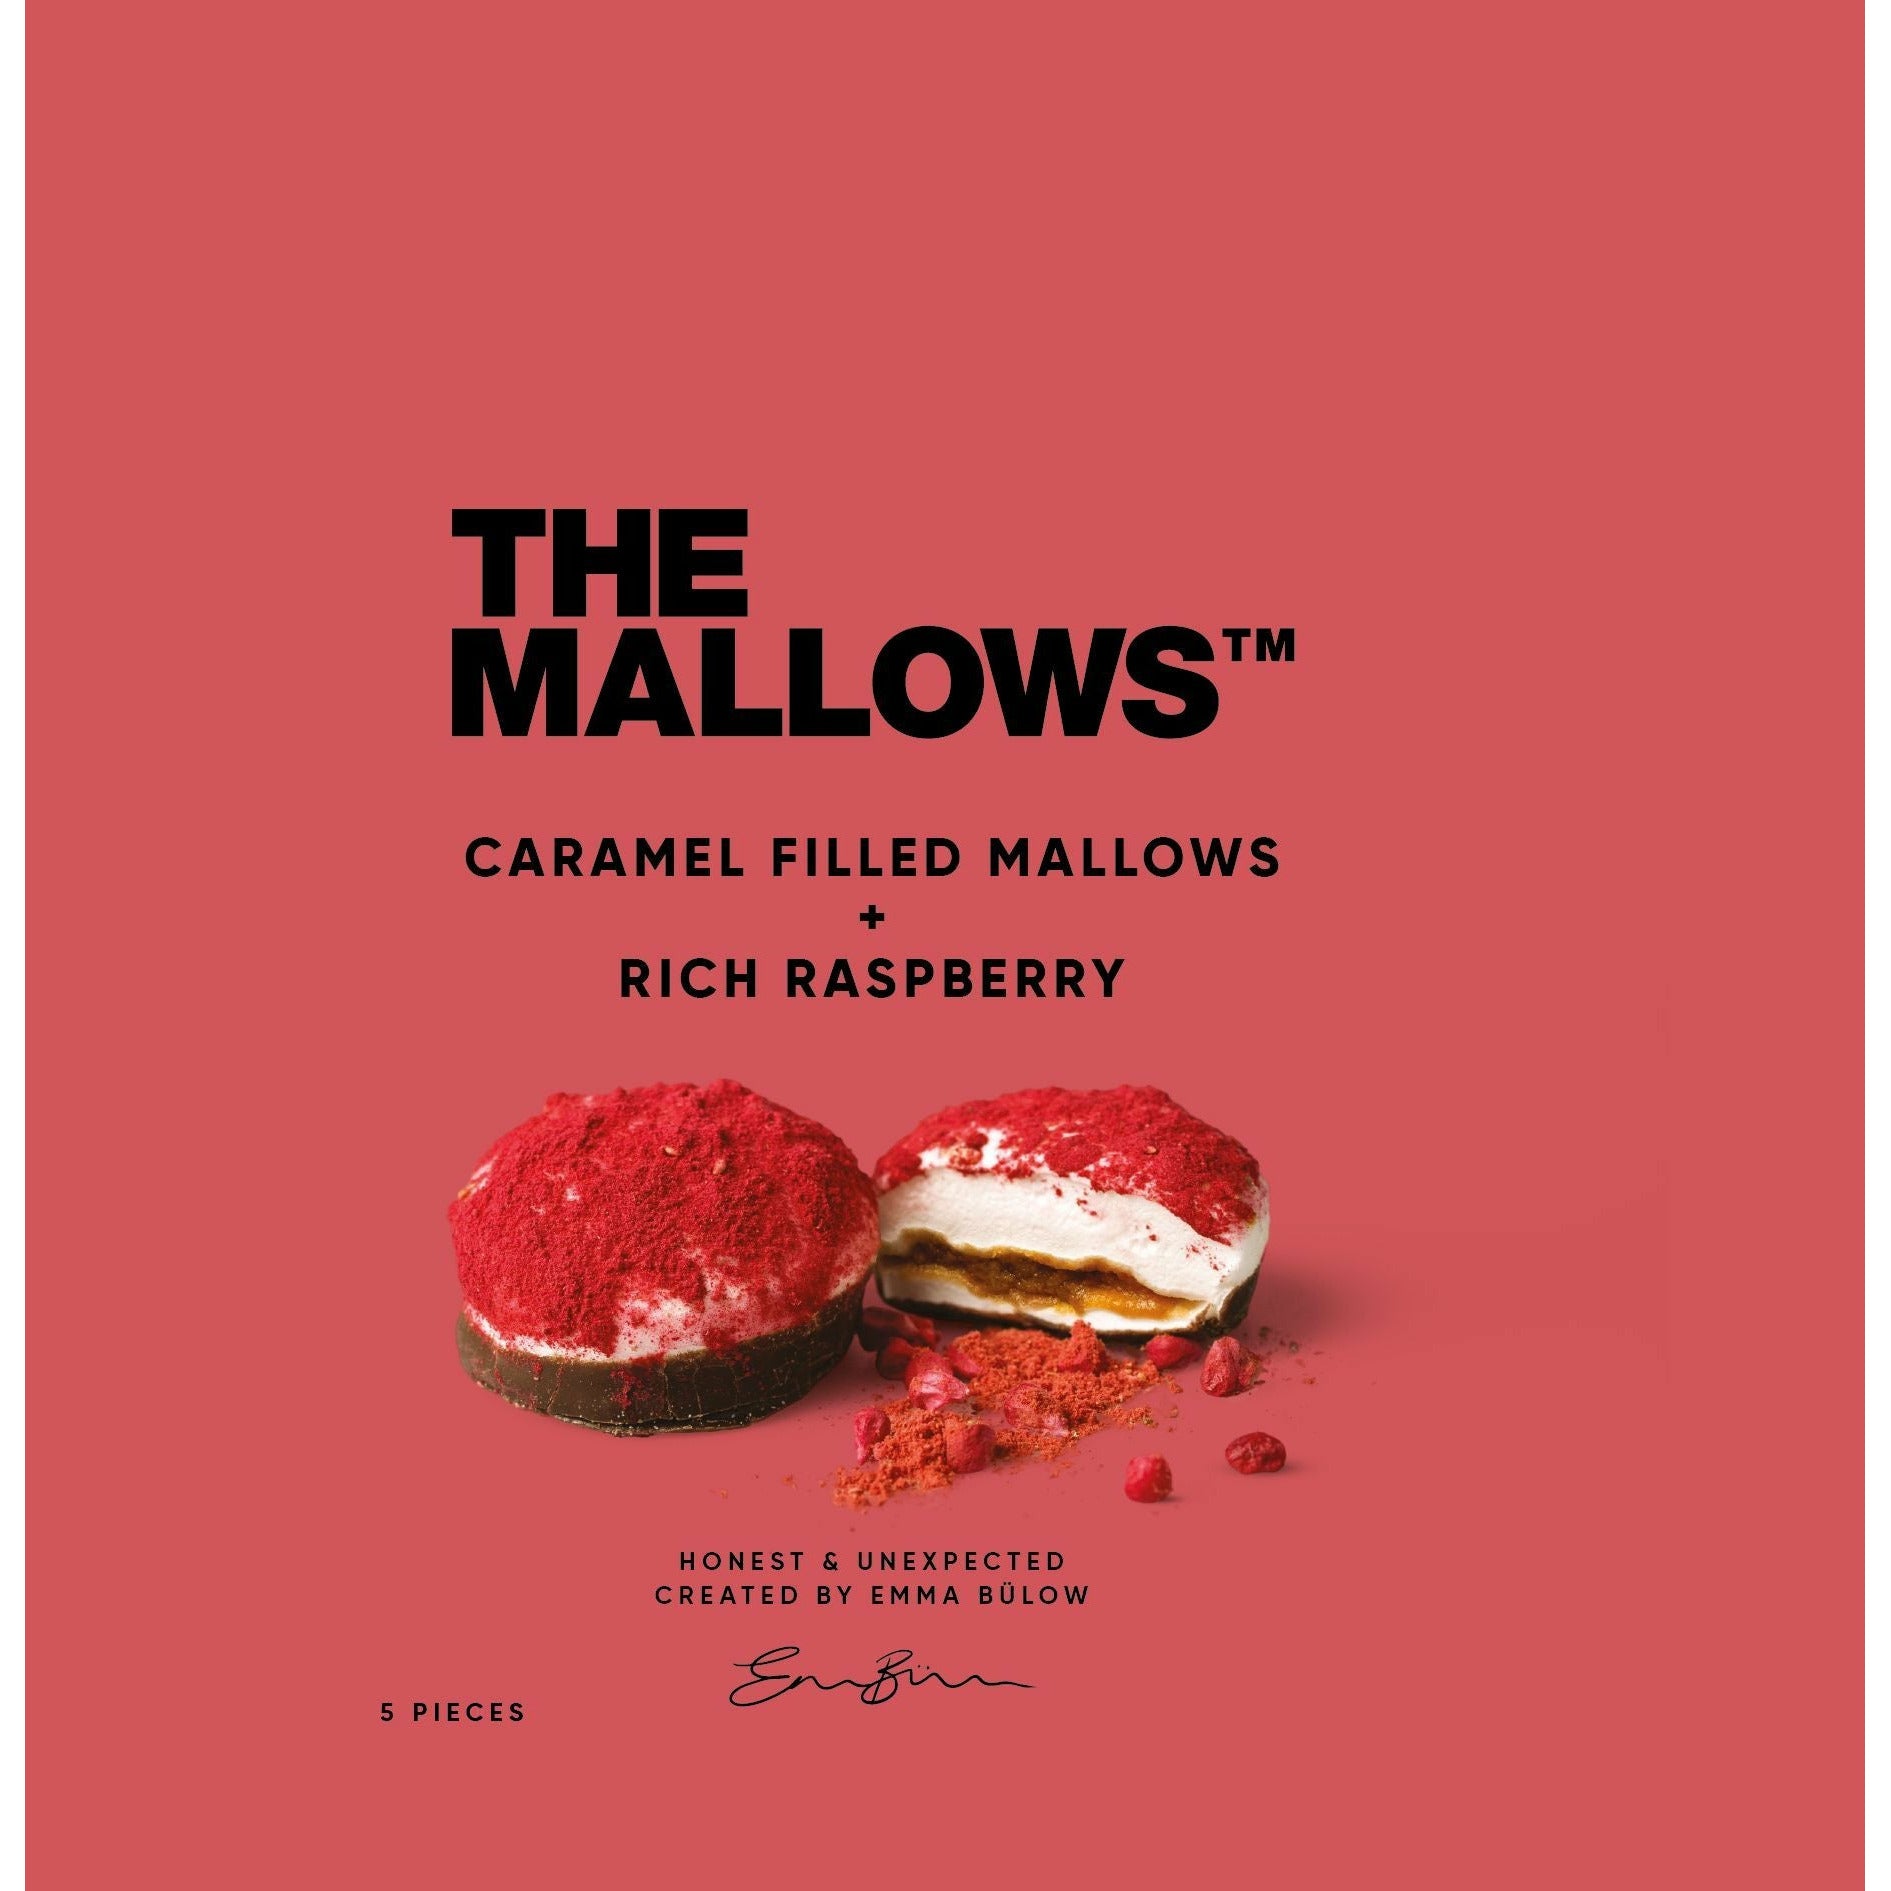 The Mallows Guimauves avec caramel remplissant une framboise riche, 11g